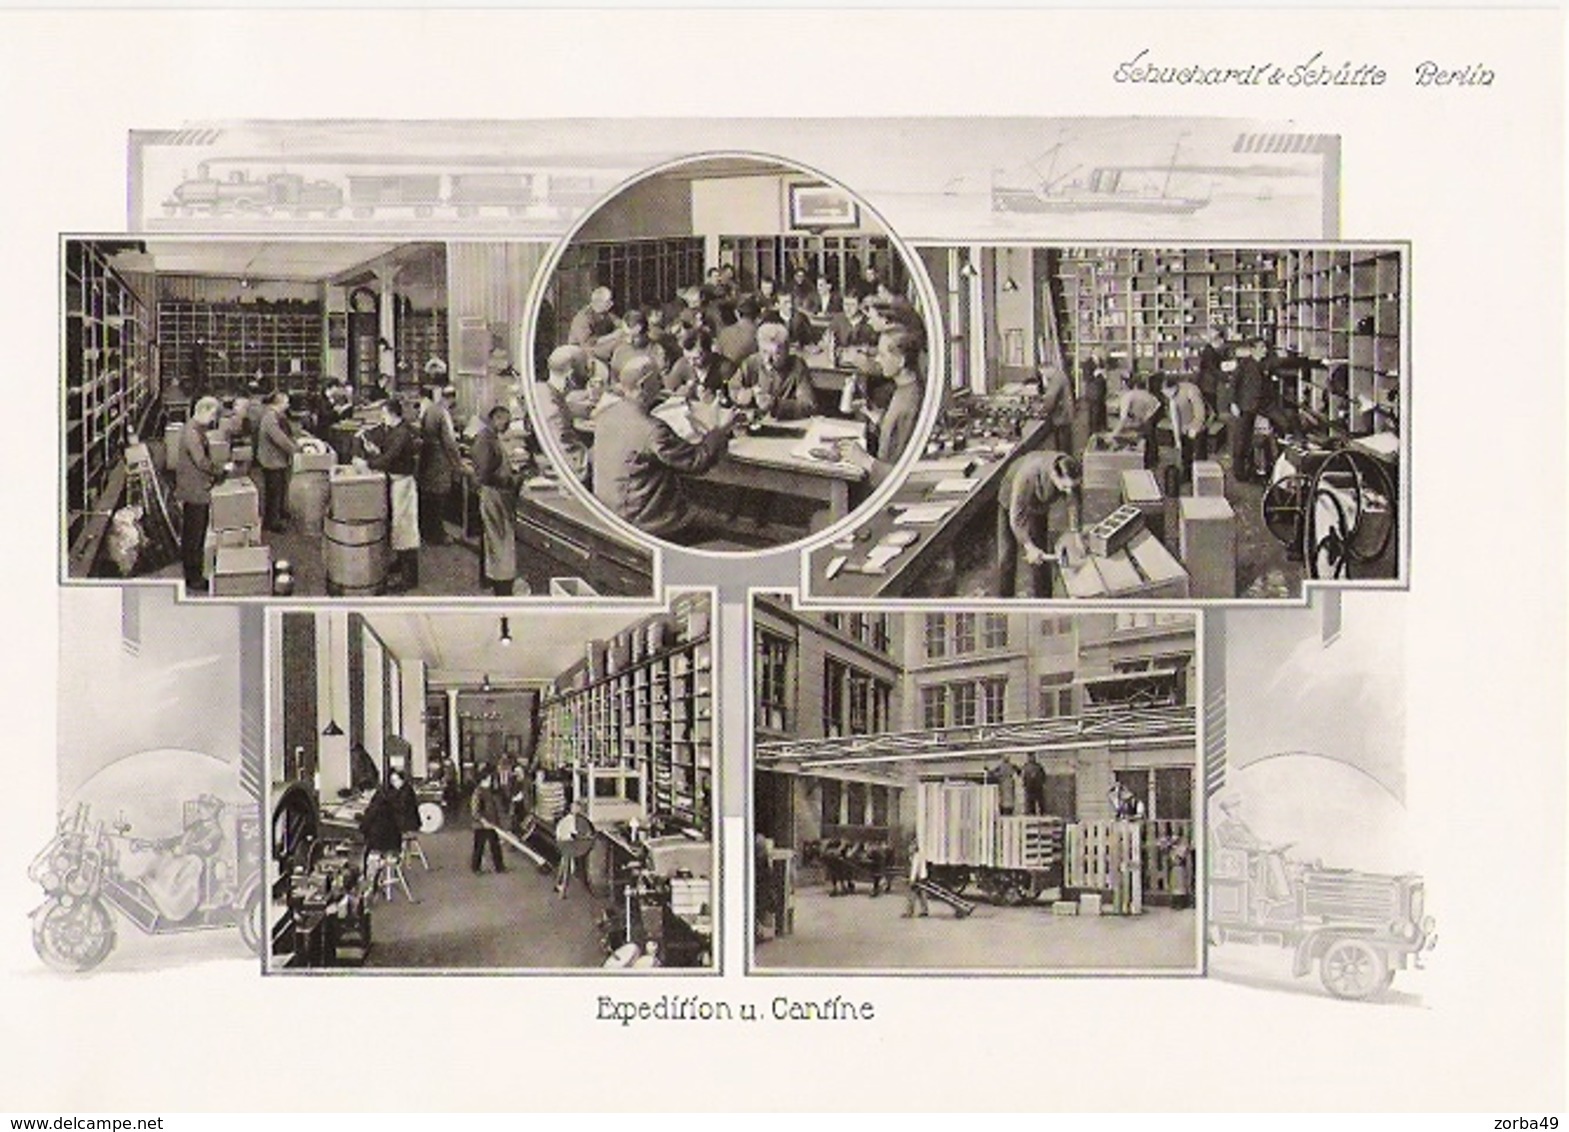 BERLIN  Belles planches de 1914 de l' entreprise Schuchardt et Schütte Spandauerstrasse 28-29